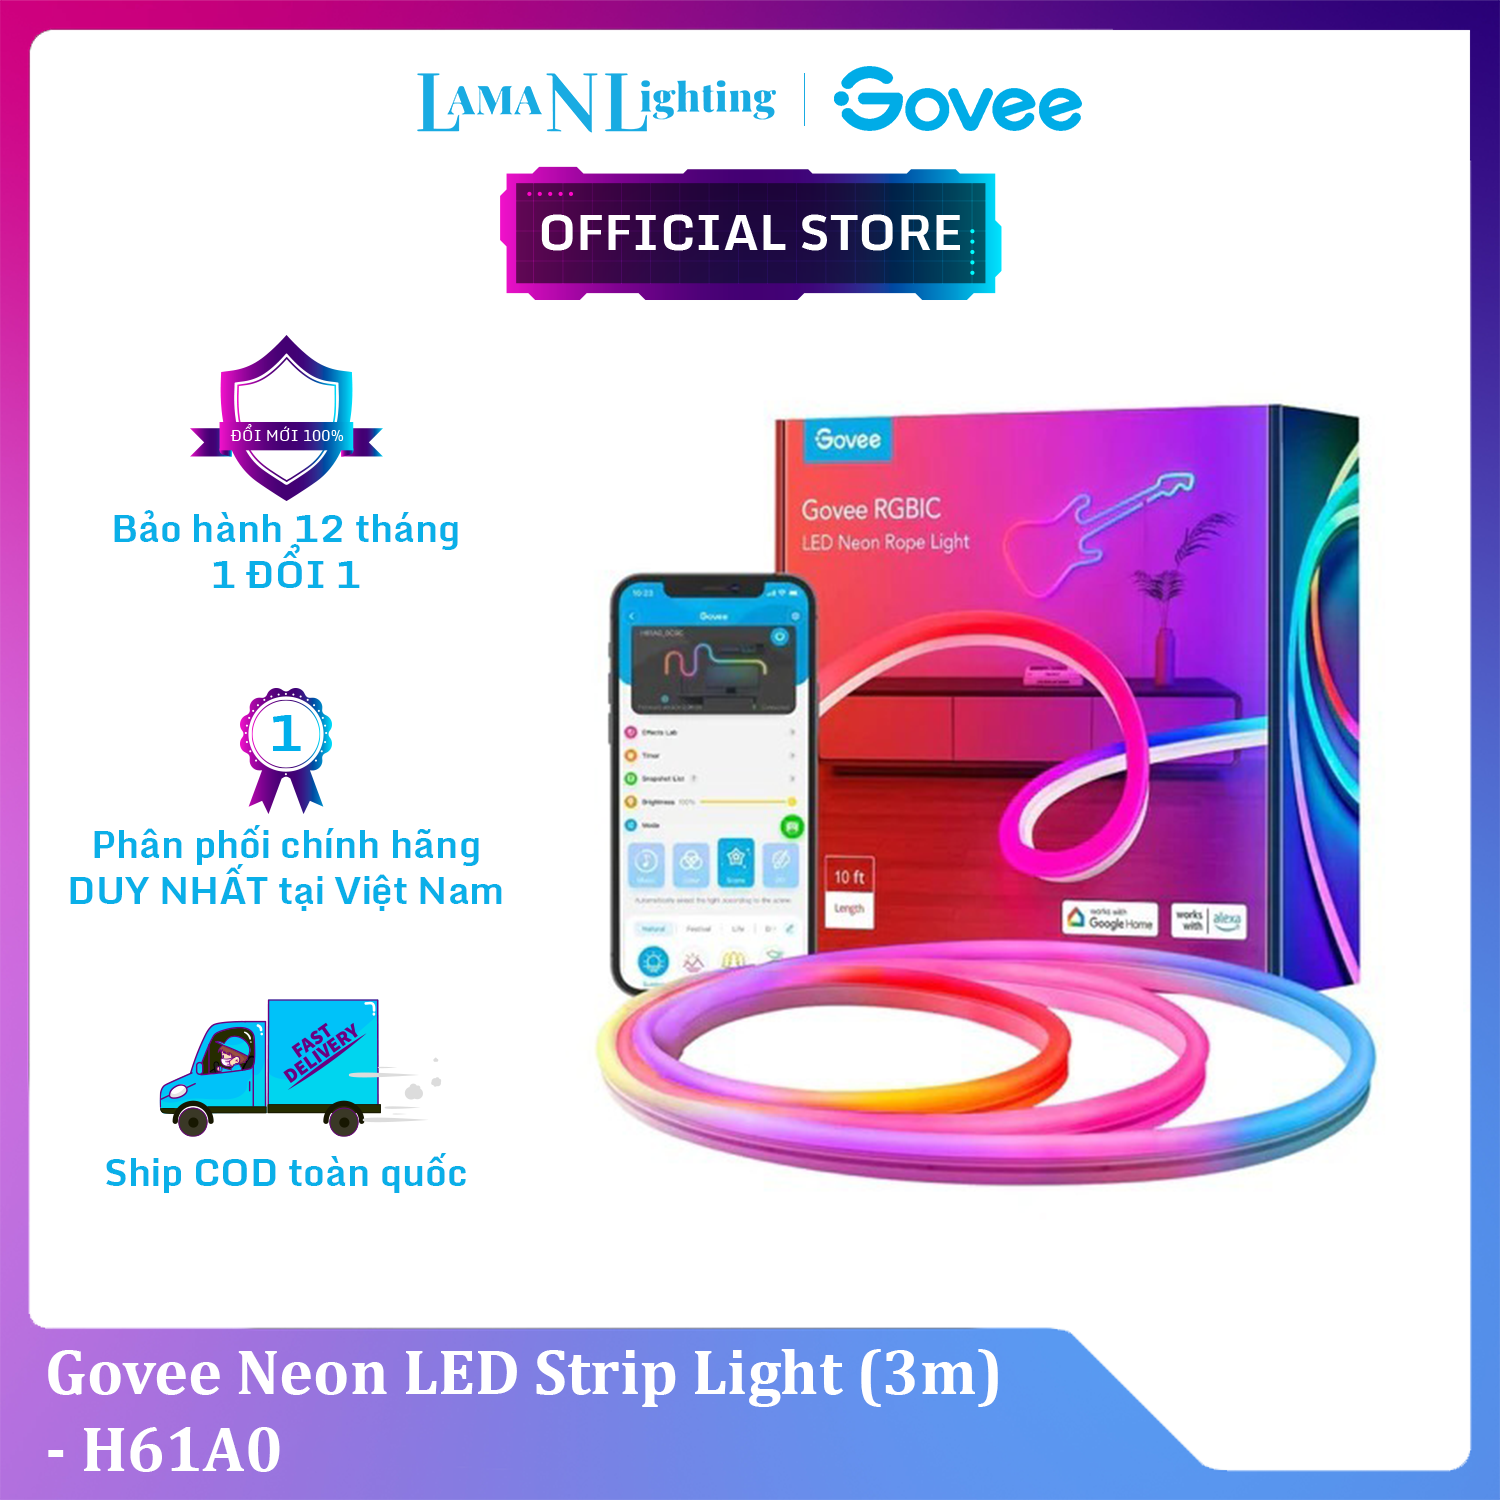 Dây đèn LED RGB Govee Neon LED Strip Light 3M H61A0 | Đèn DIY trang trí, chống thấm nước, công nghệ RGBIC 16 triệu màu, 64 chế độ tự động| Hàng chính hãng